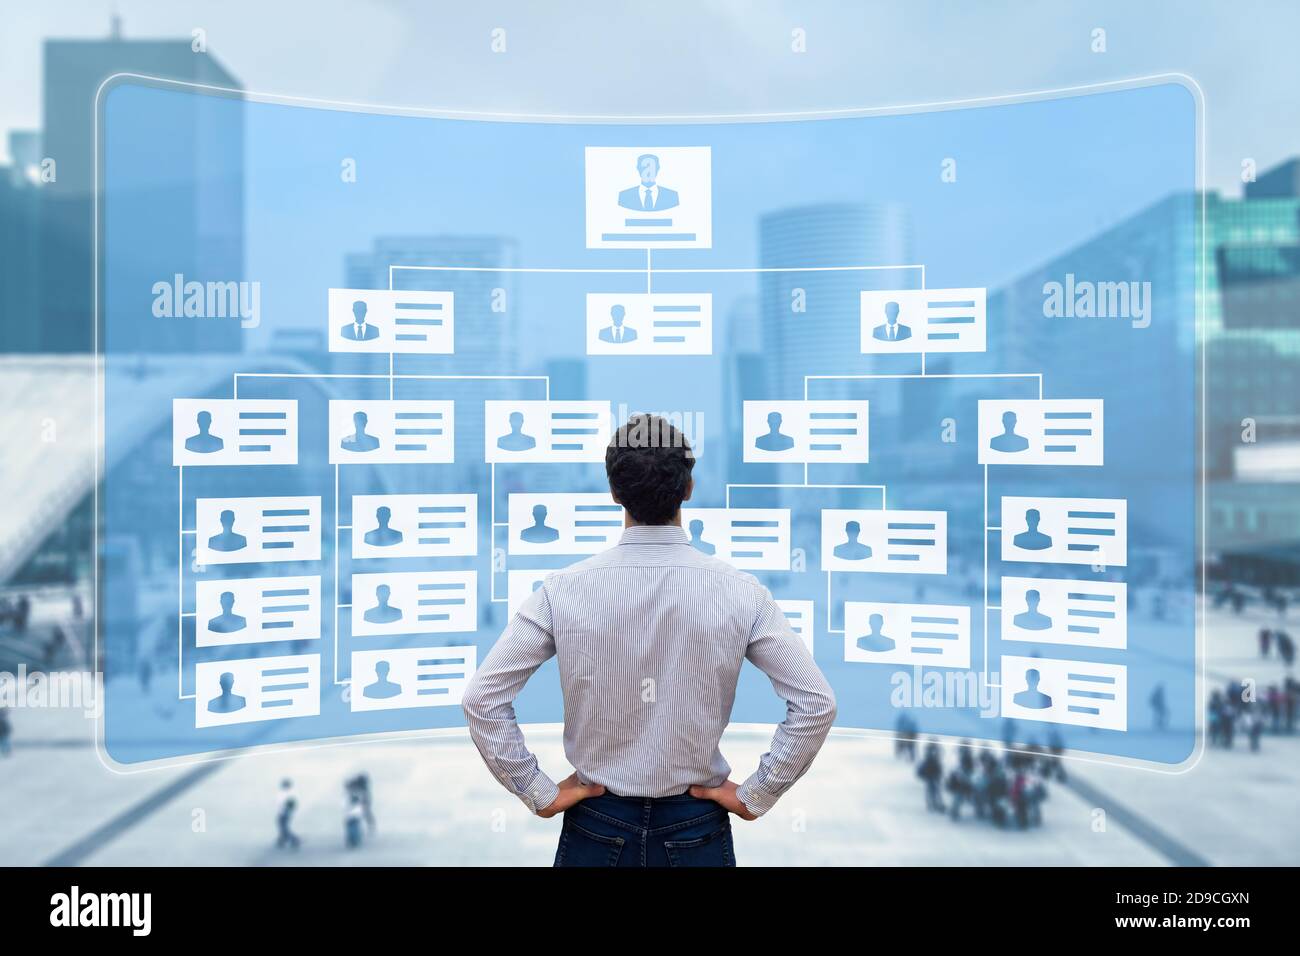 Organigrama que muestra la estructura jerárquica de los equipos en la corporación con CEO, directores, ejecutivos y empleados. Director de Recursos Humanos trabajando Foto de stock